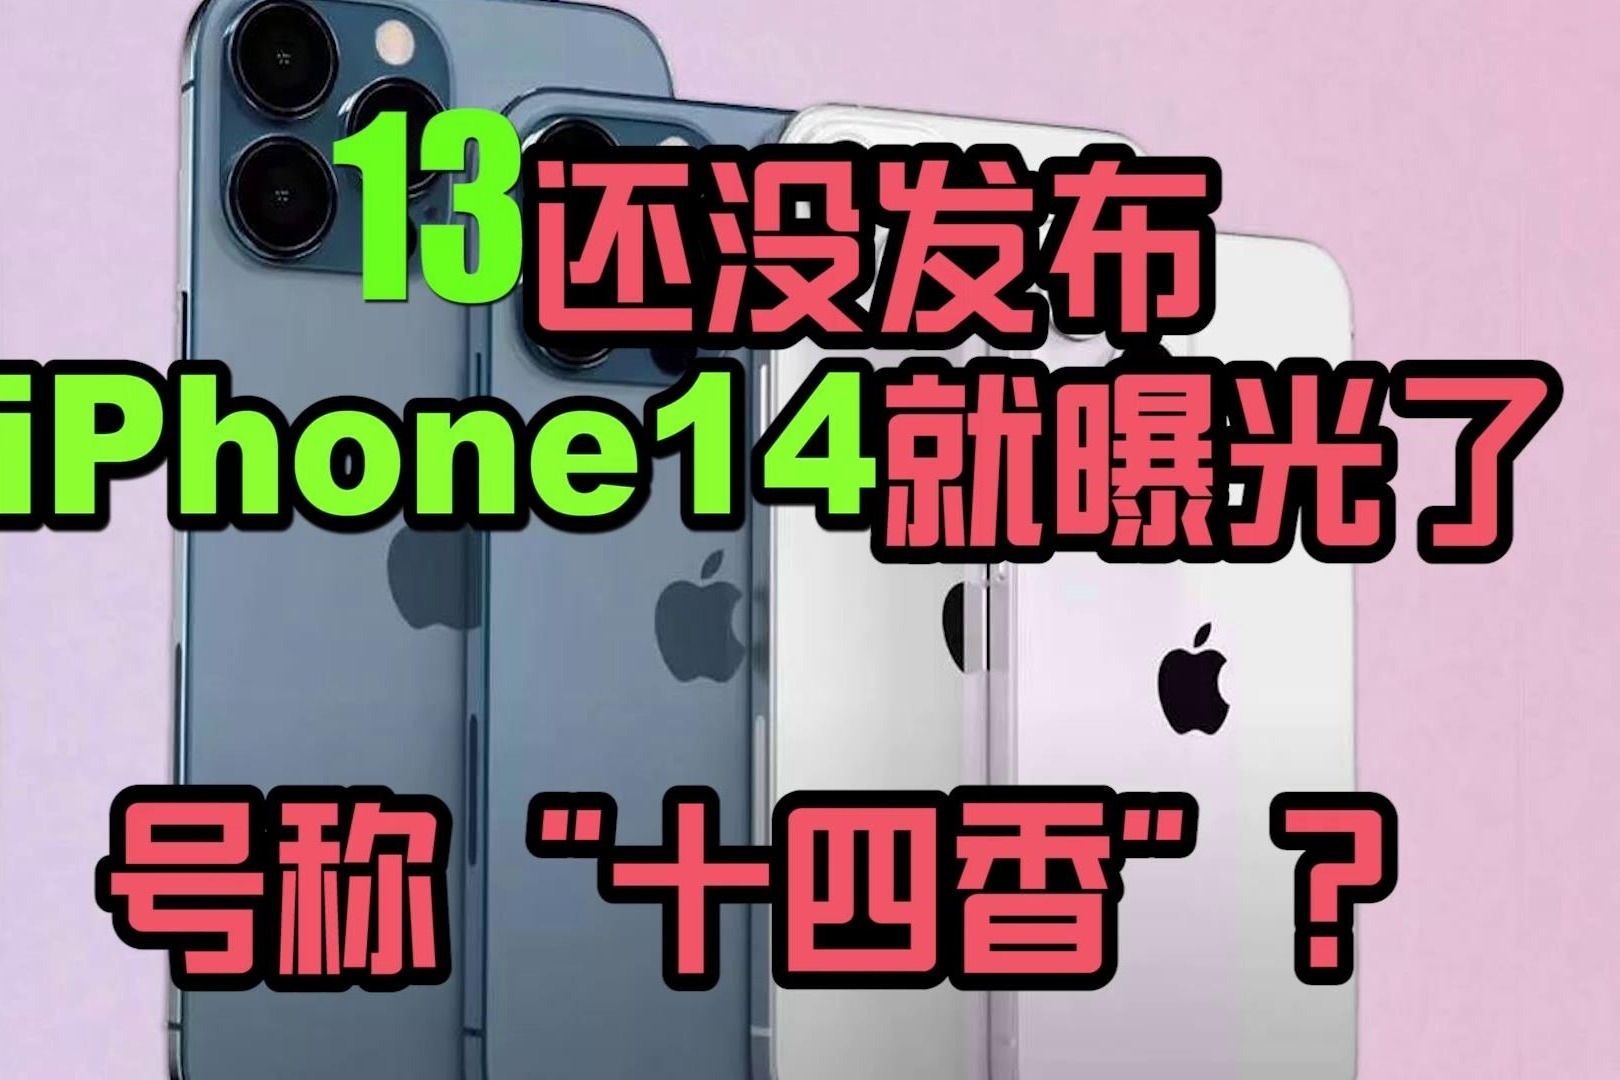 13还没发布，iPhone 14 就曝光了！号称“十四香”？